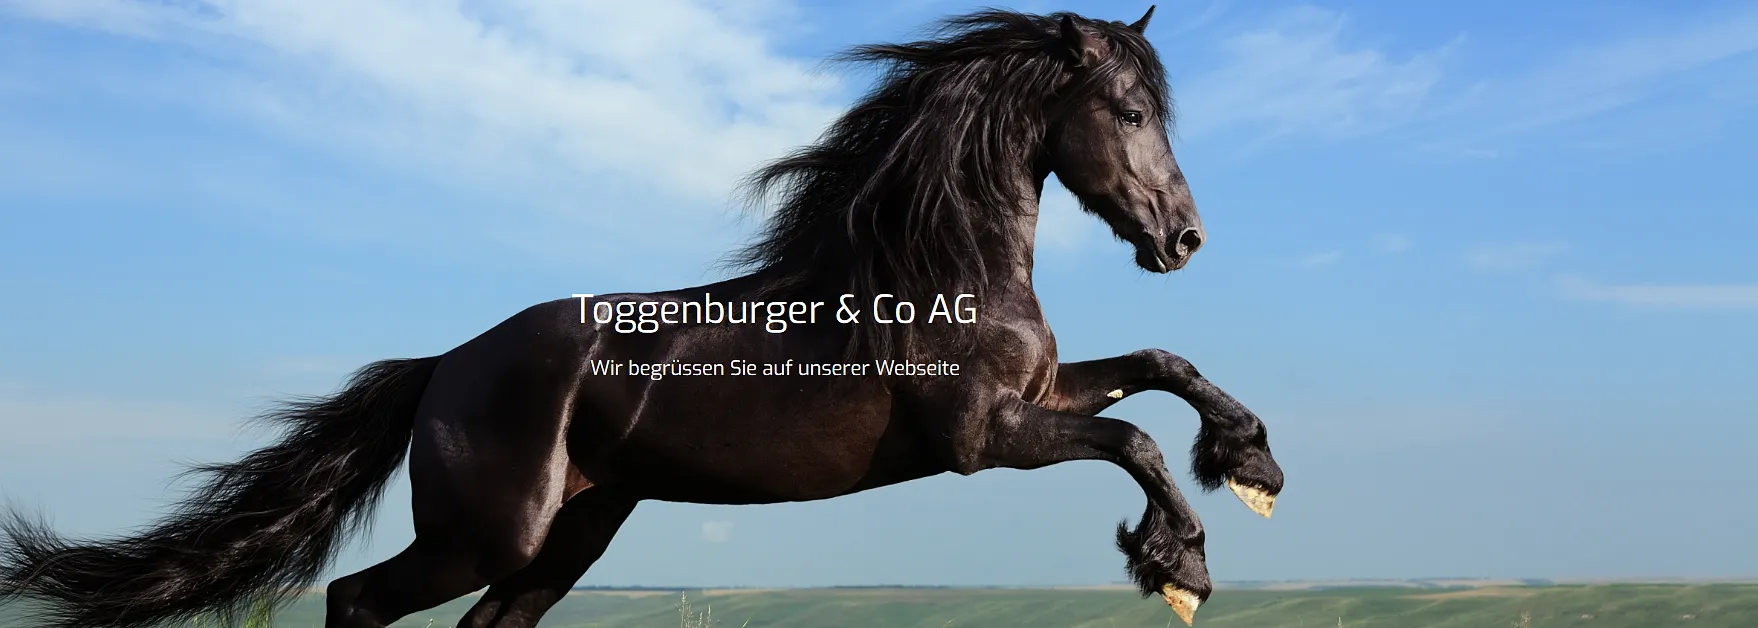 Toggenburger & Co AG